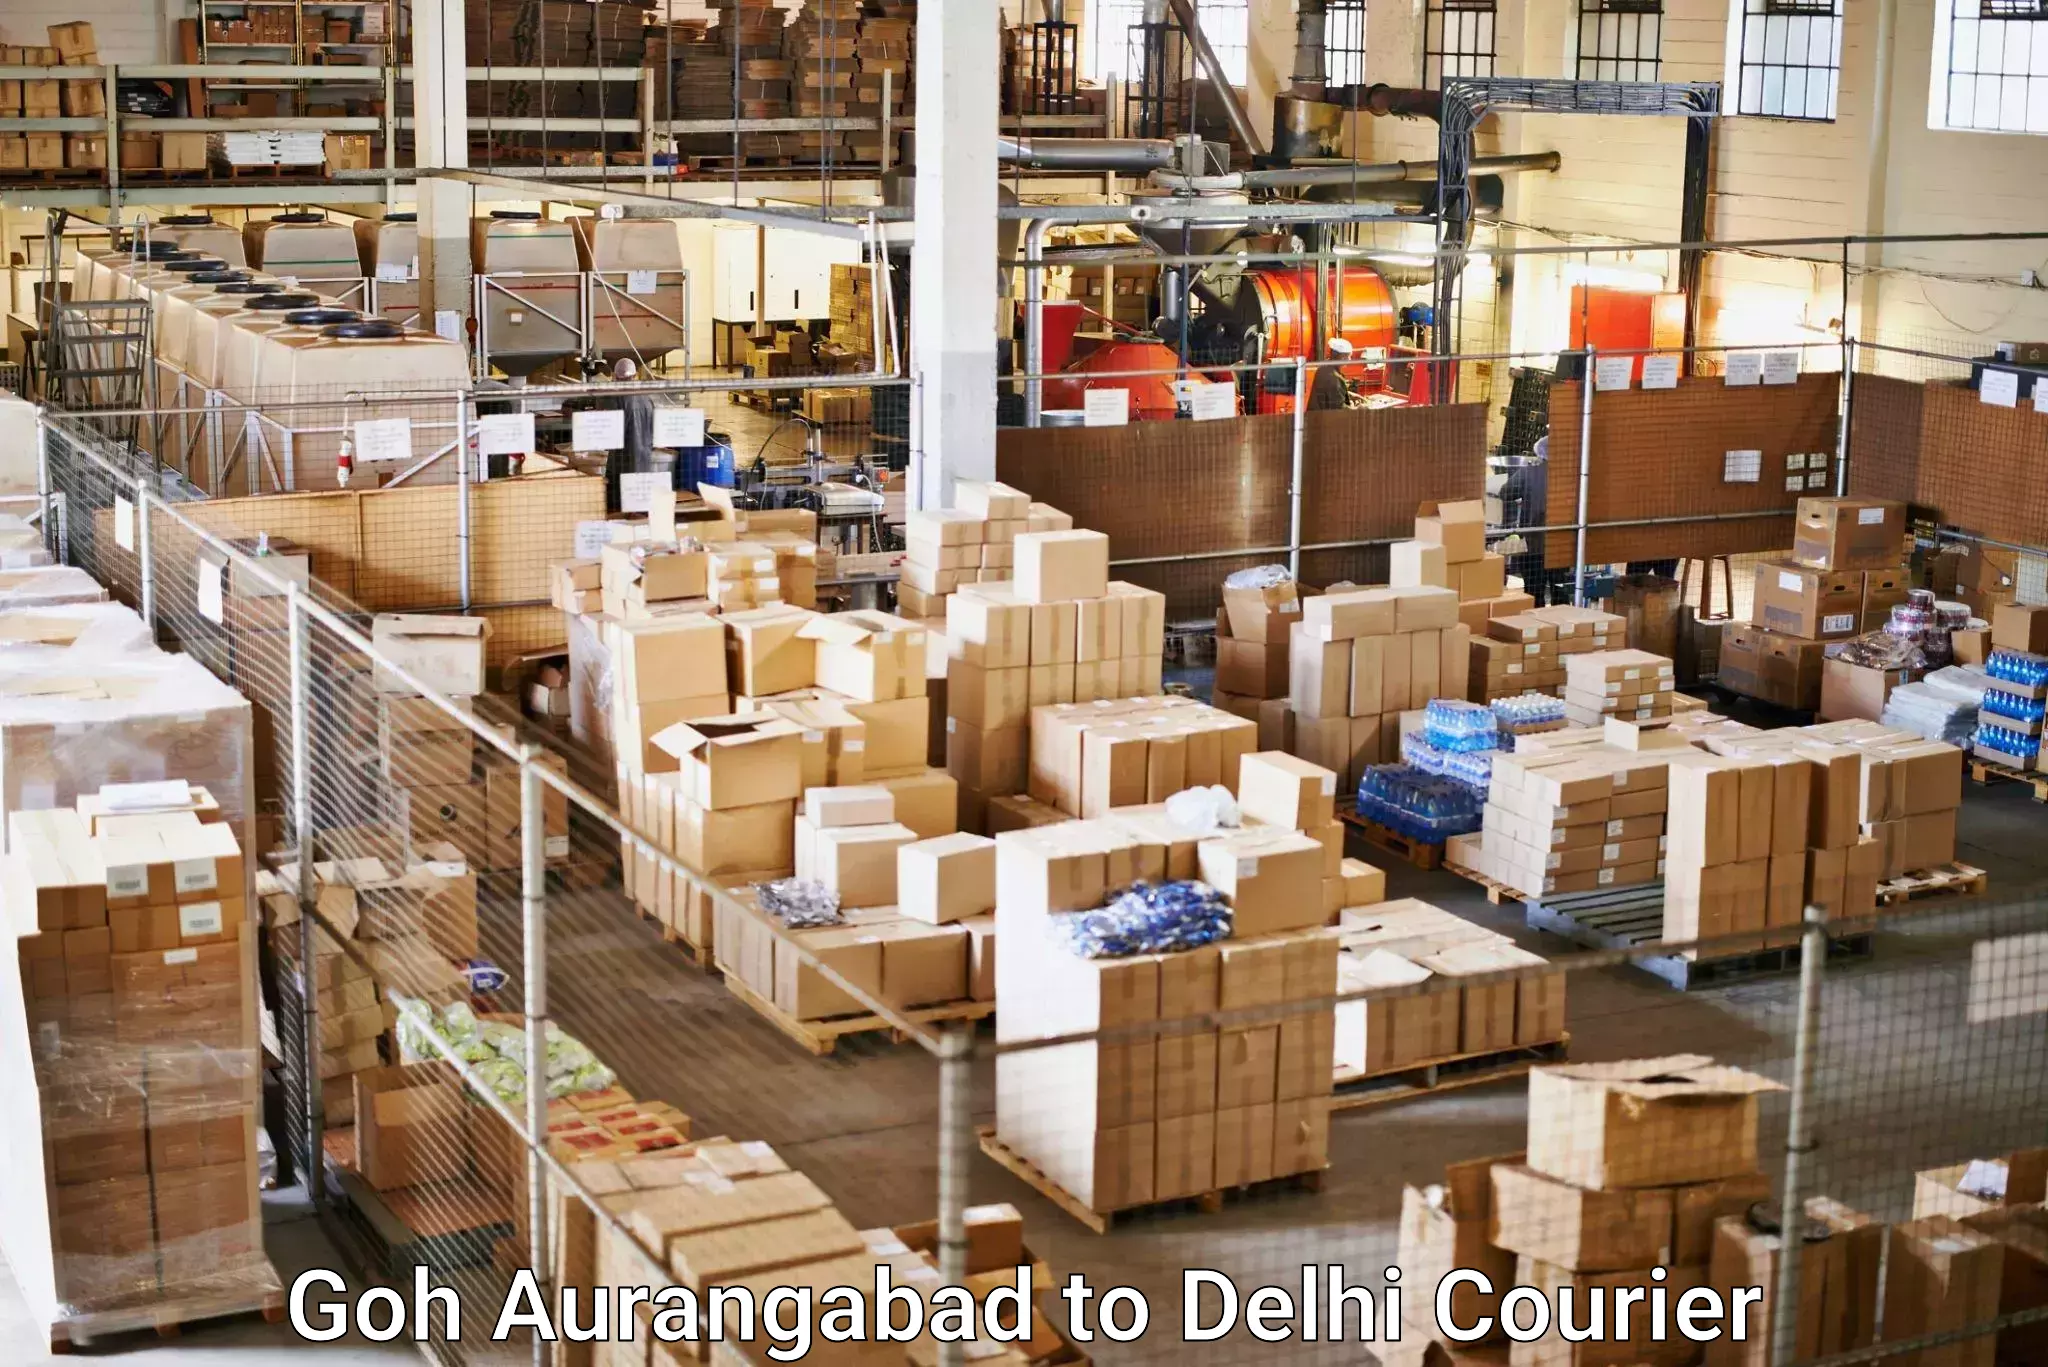 Courier service comparison Goh Aurangabad to University of Delhi